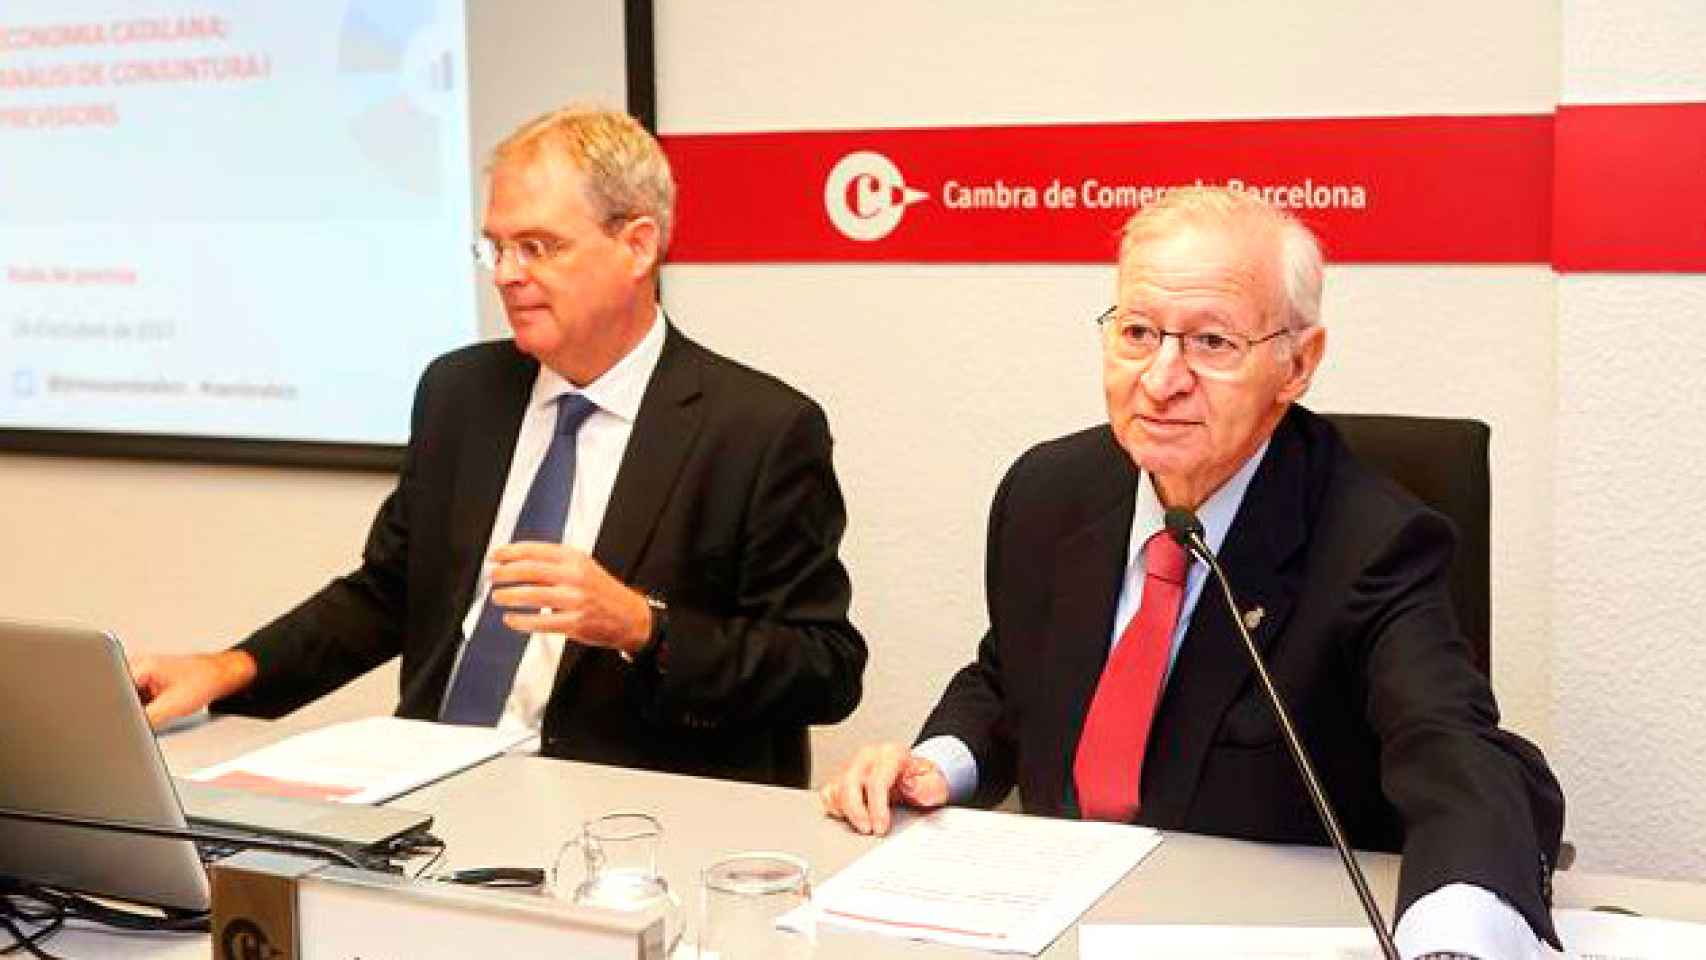 El jefe de estudios de la Cámara de Comercio de Barcelona, Joan Ramon Rovira, y el presidente, Miquel Valls, en la presentación del informe trimestral de coyuntura catalana / EFE